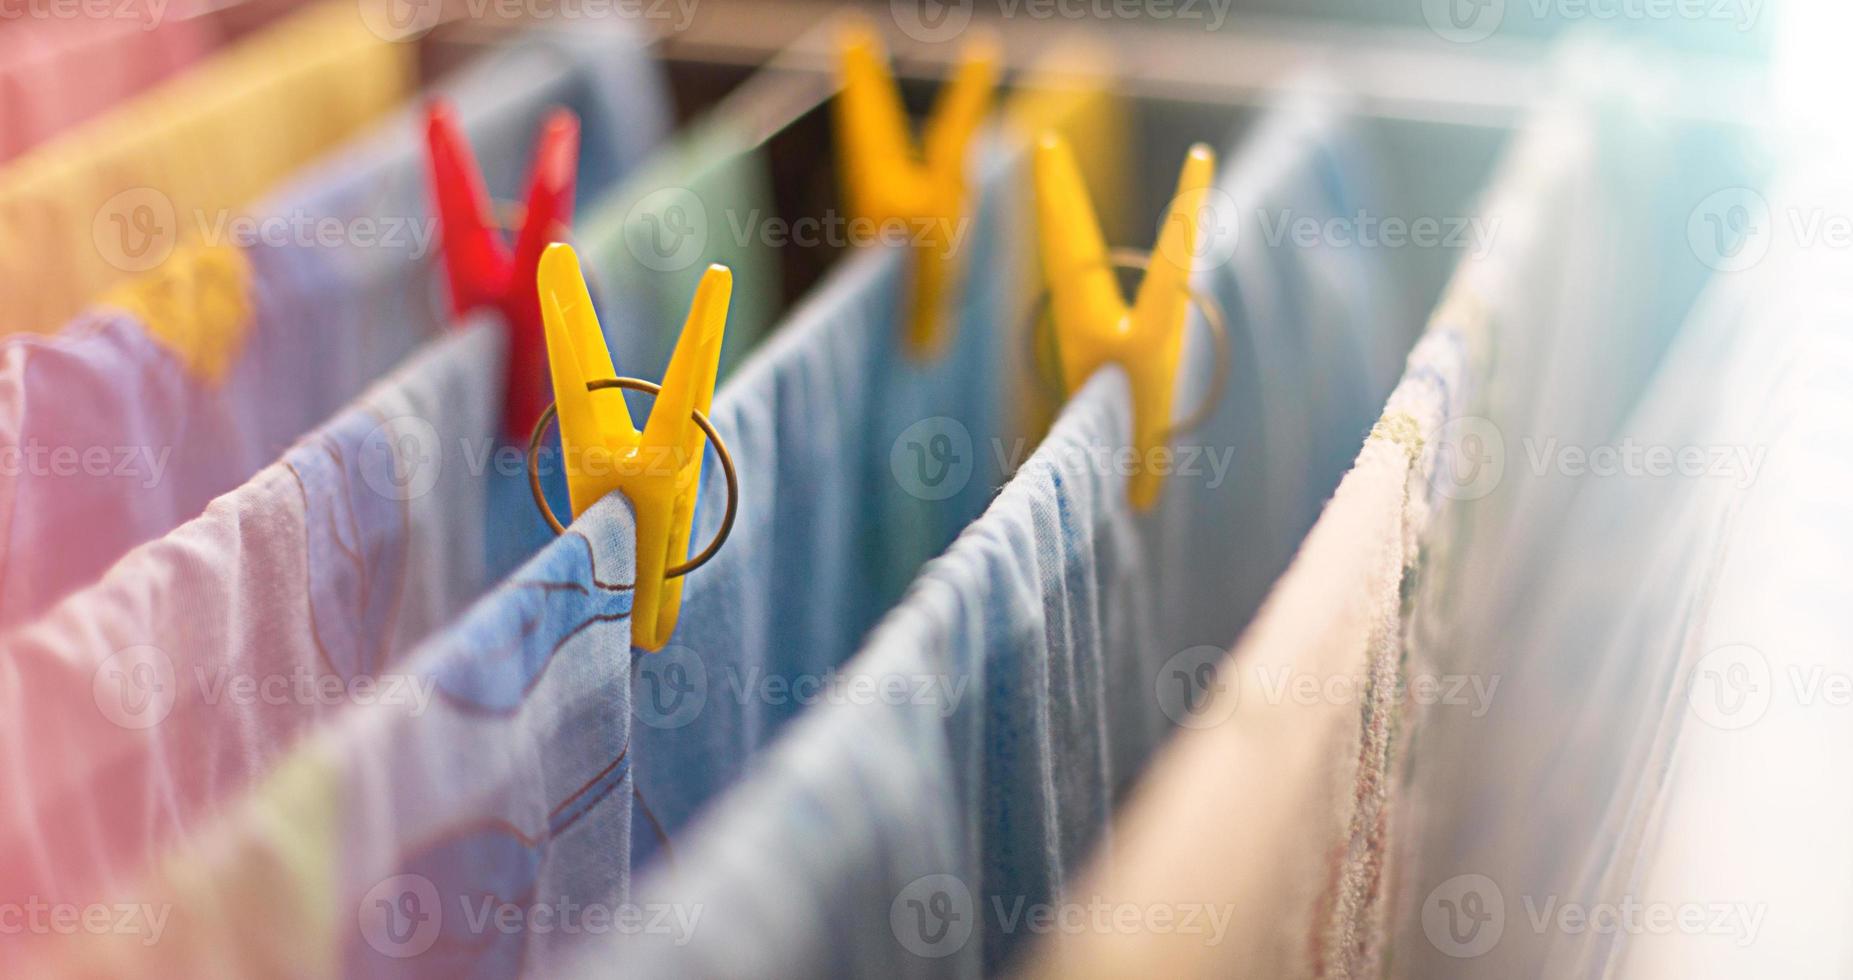 färgglada rena sängkläder och handdukar efter tvätt hängs på torktumlarens stänger och säkras med gula och röda klädnypor. allmänstädning, tvätttorkning, kompakt torktumlare för huset. foto